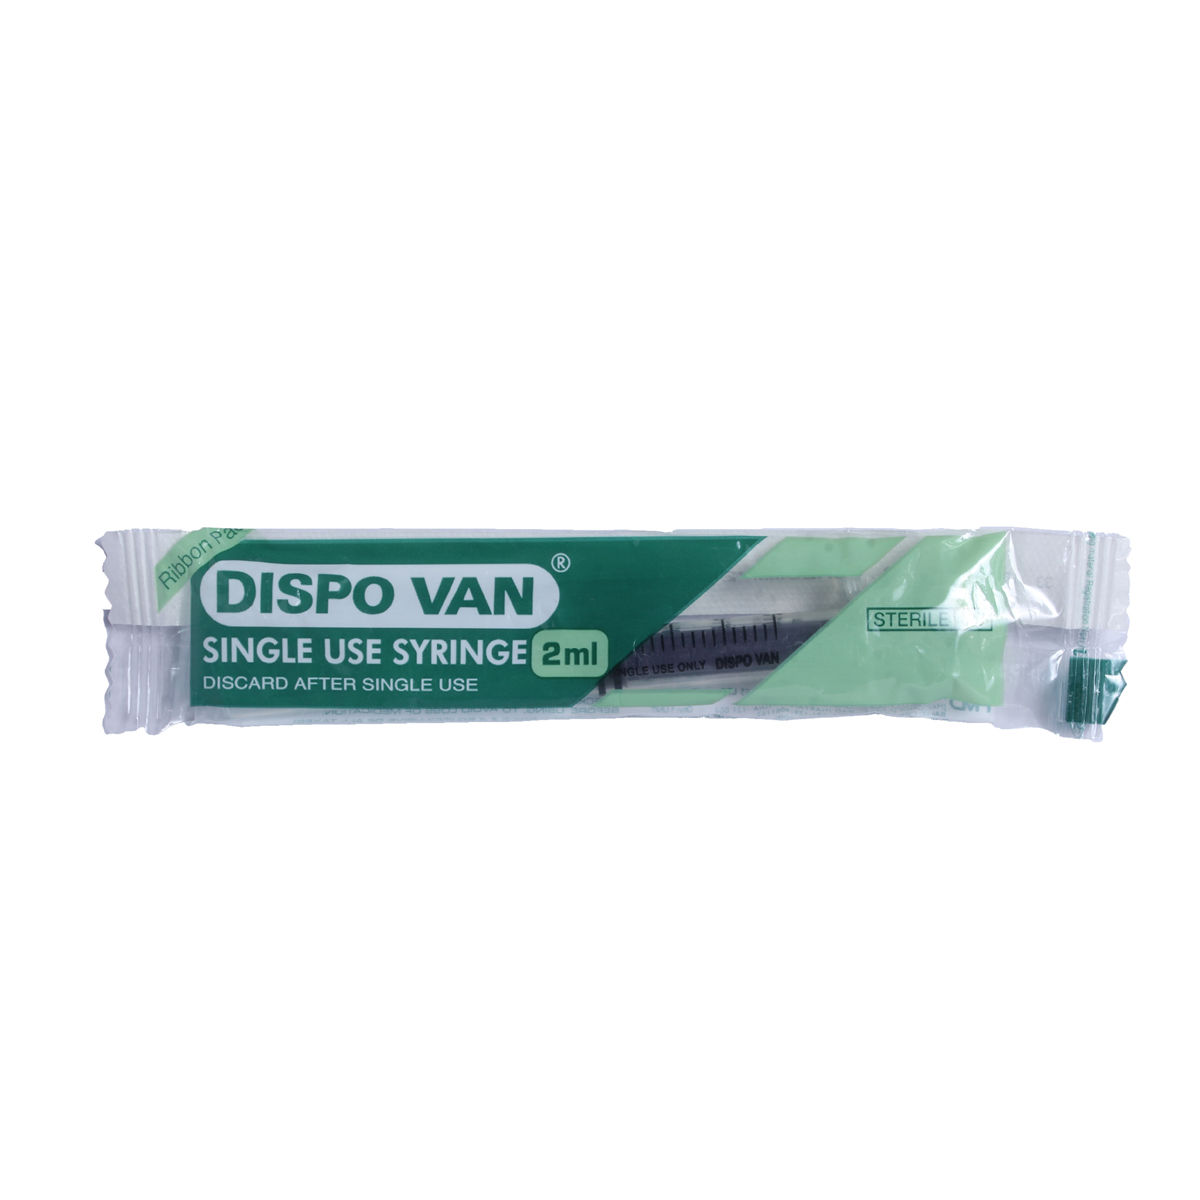 Buy Dispo Van Syringe, 2 ml Online